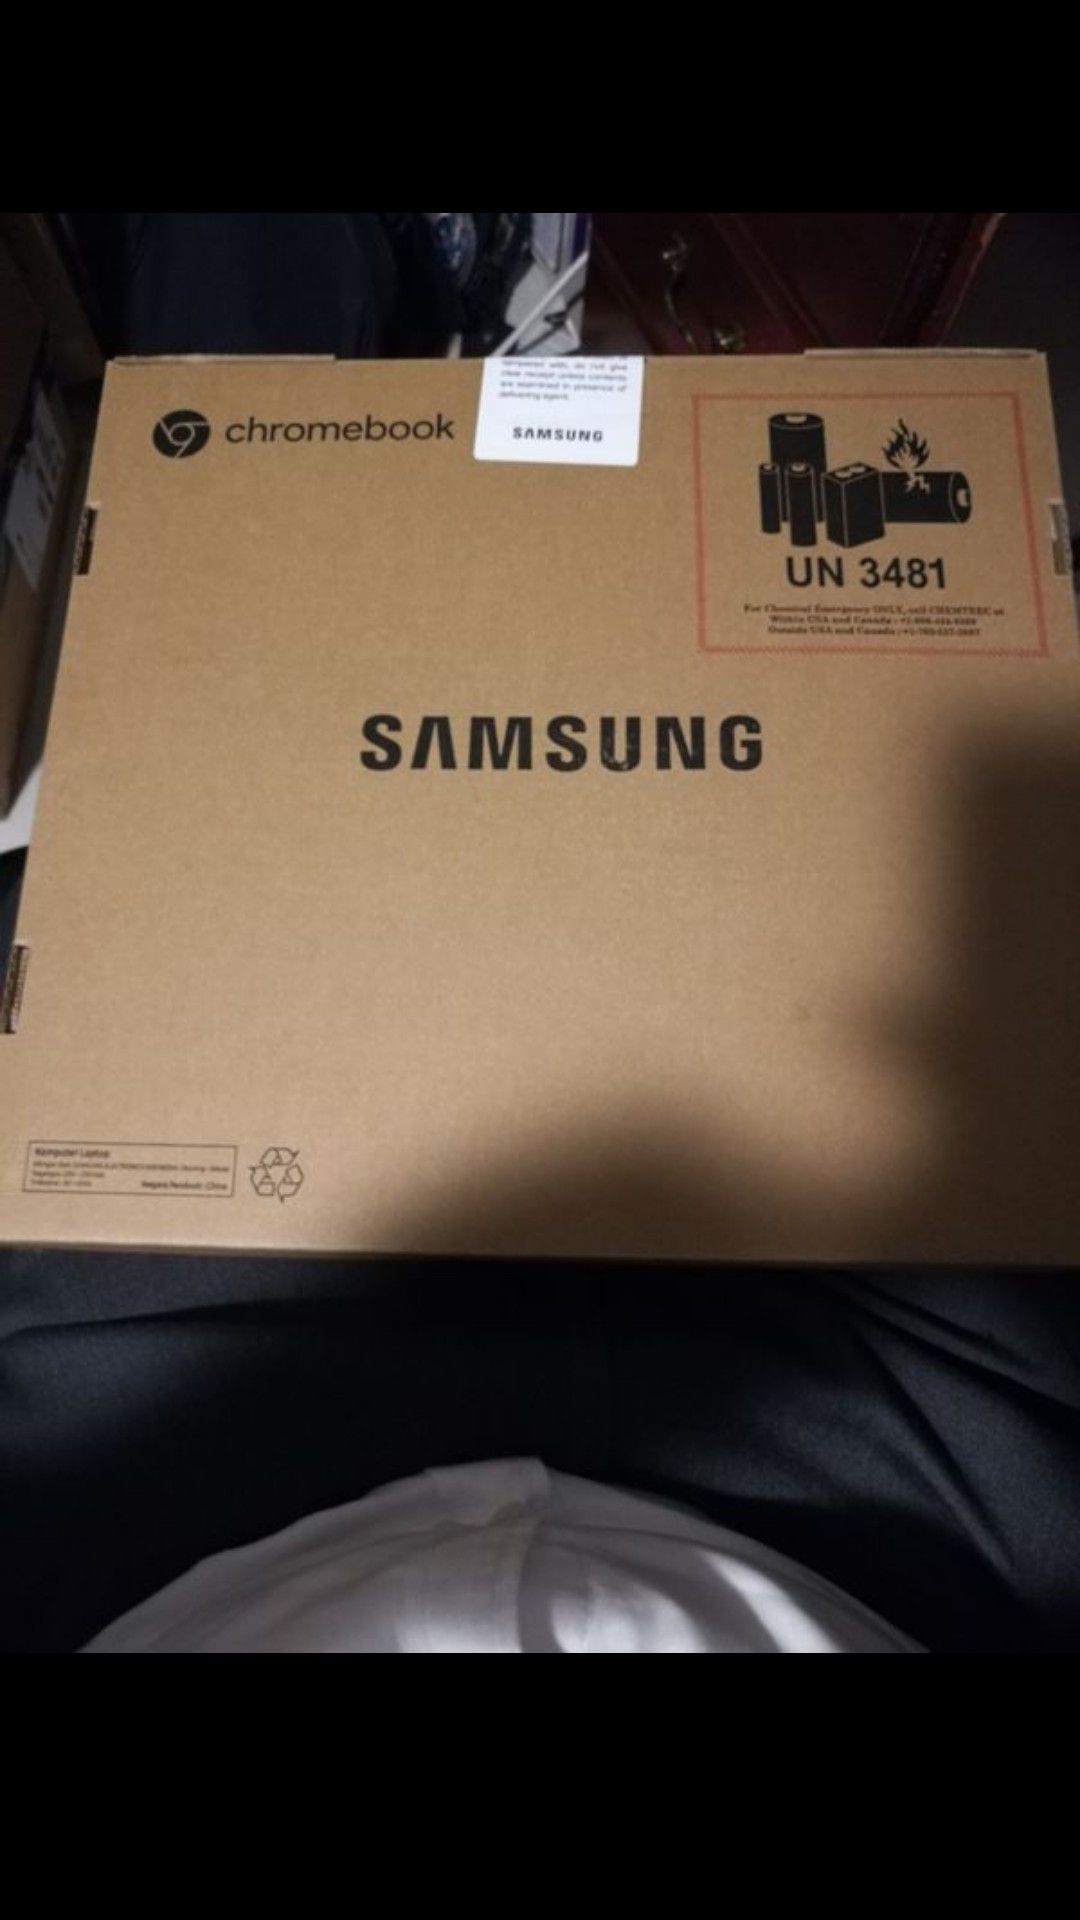 Newest model! Samsung chromebook 3, 11.6 inch Intel Atom x5